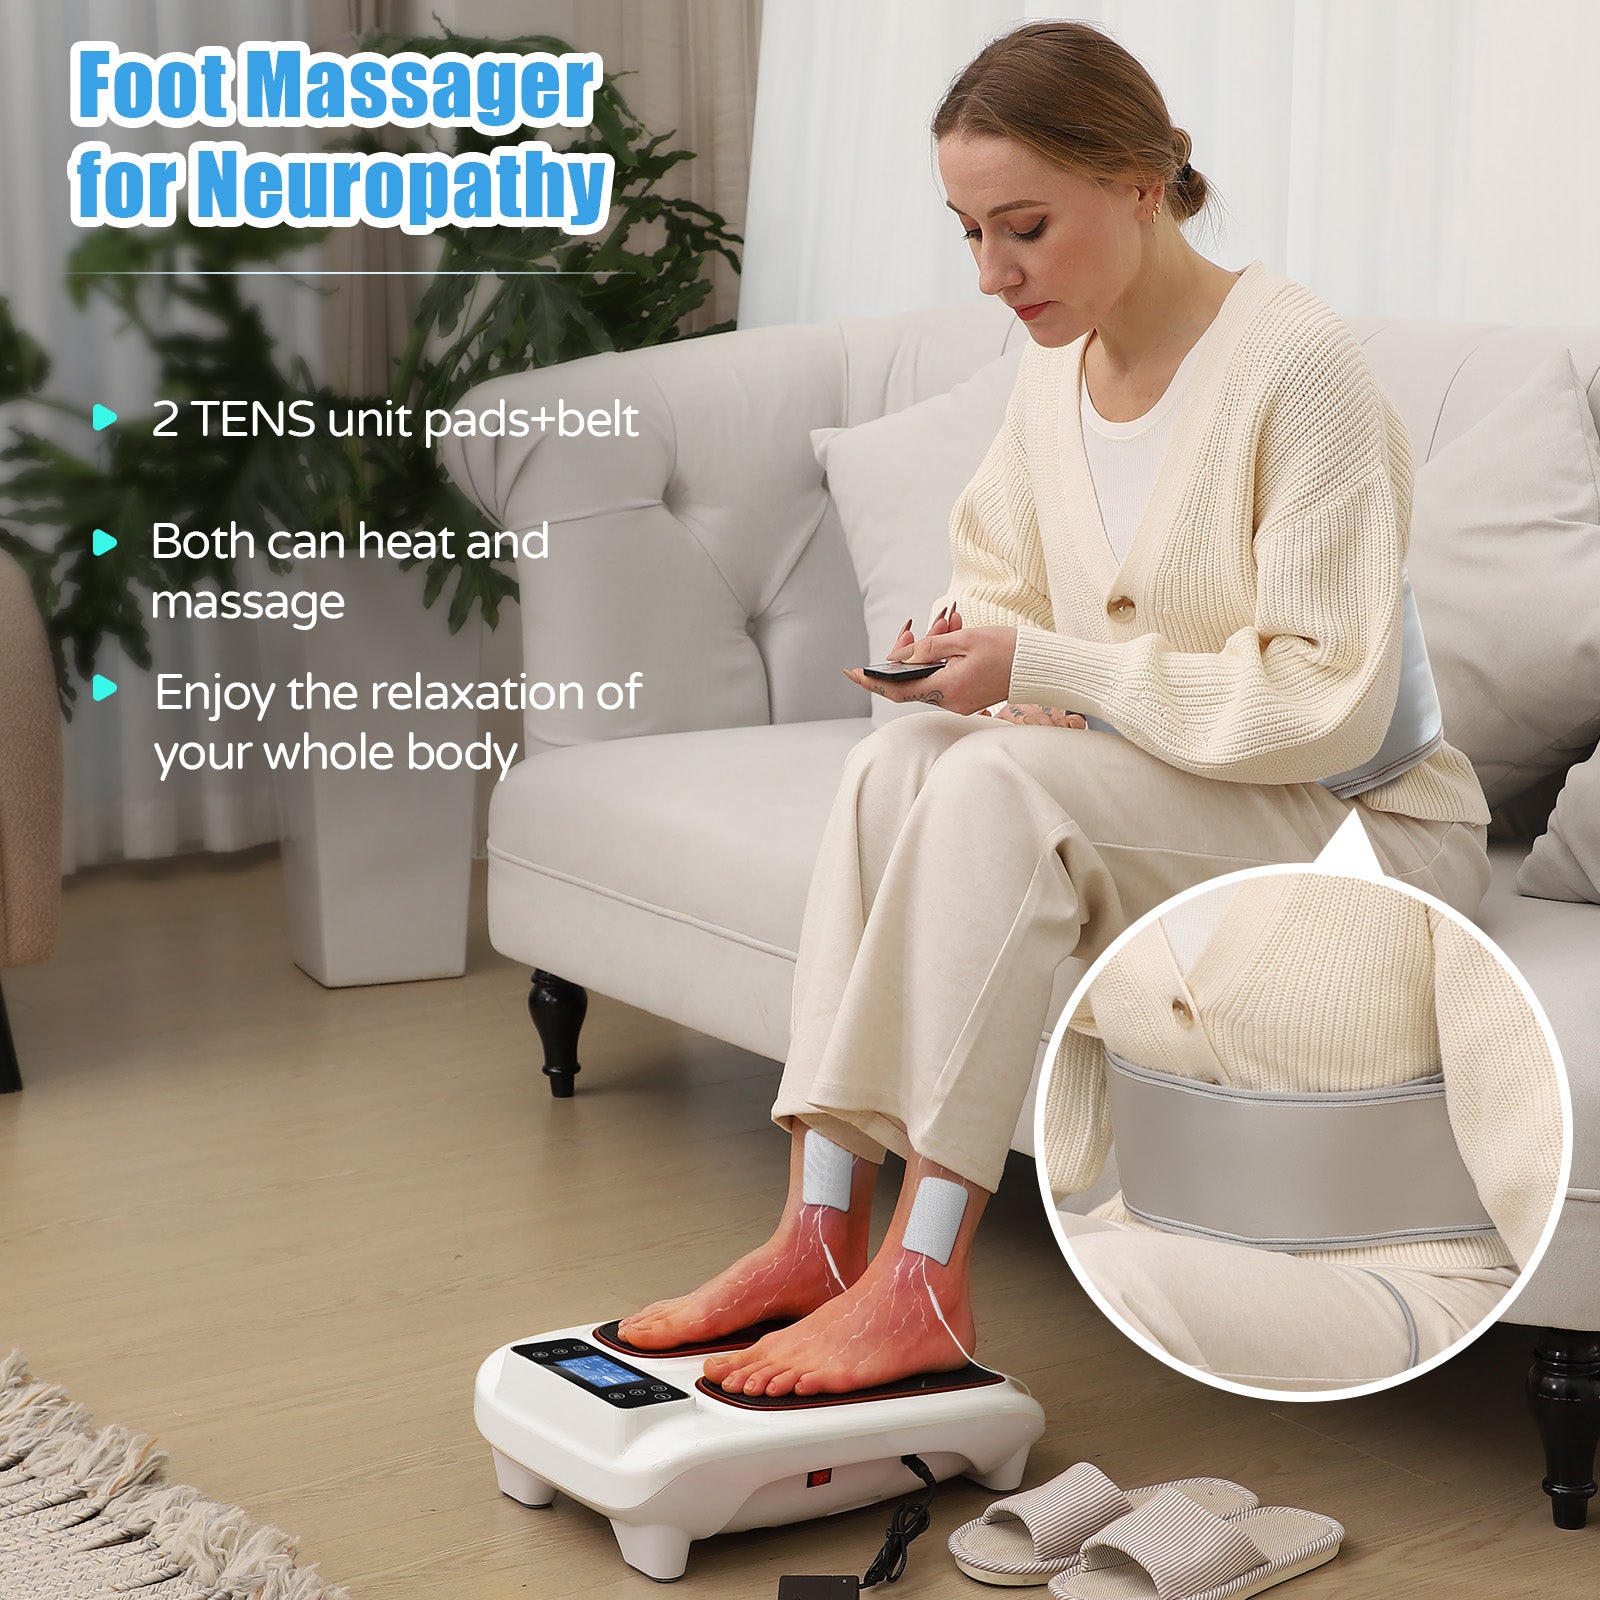 ems foot massager